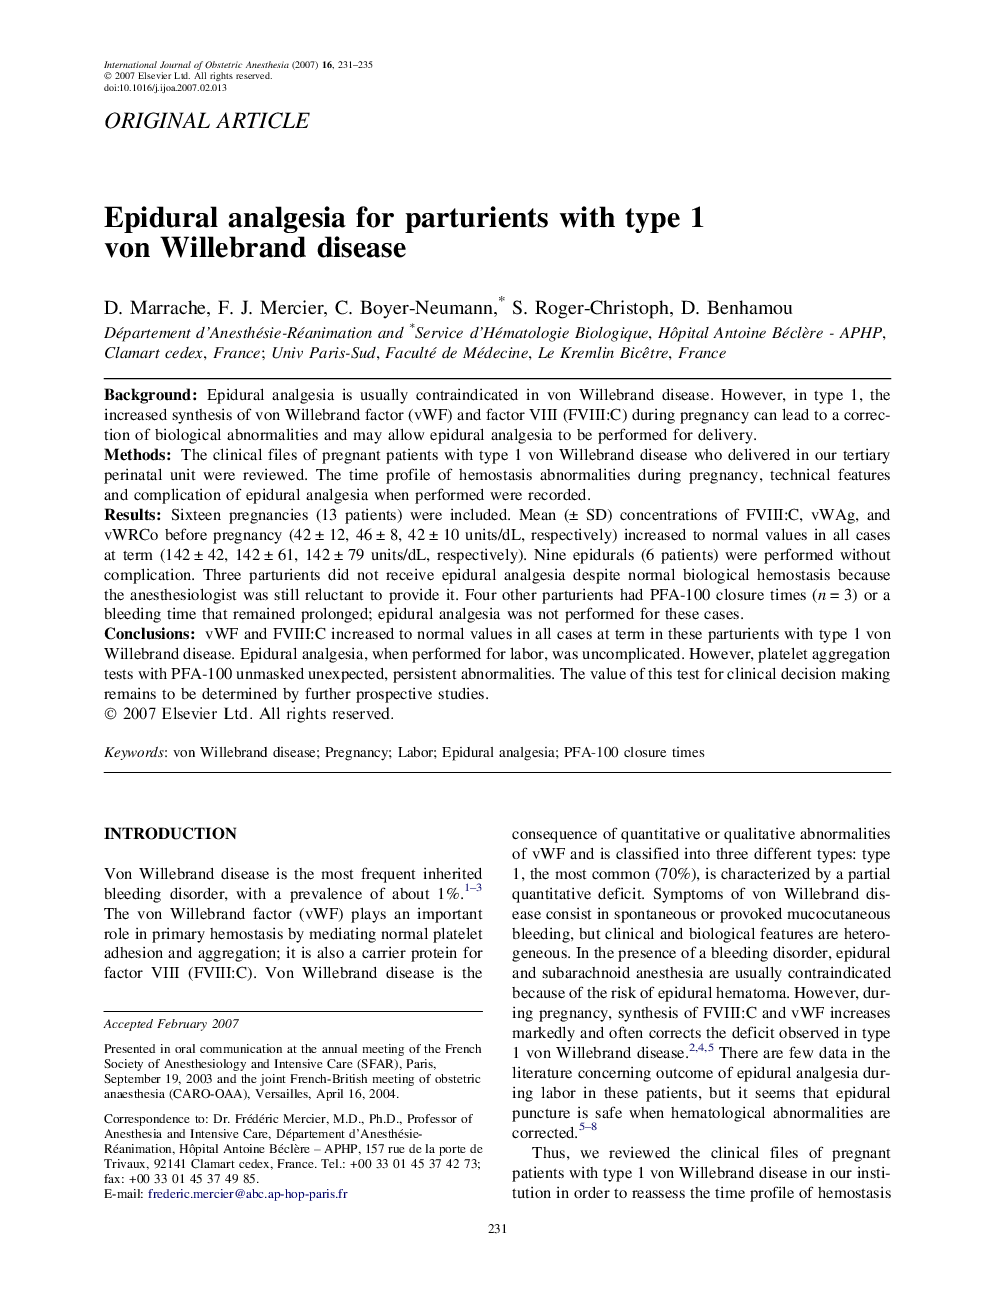 Epidural analgesia for parturients with type 1 von Willebrand disease 